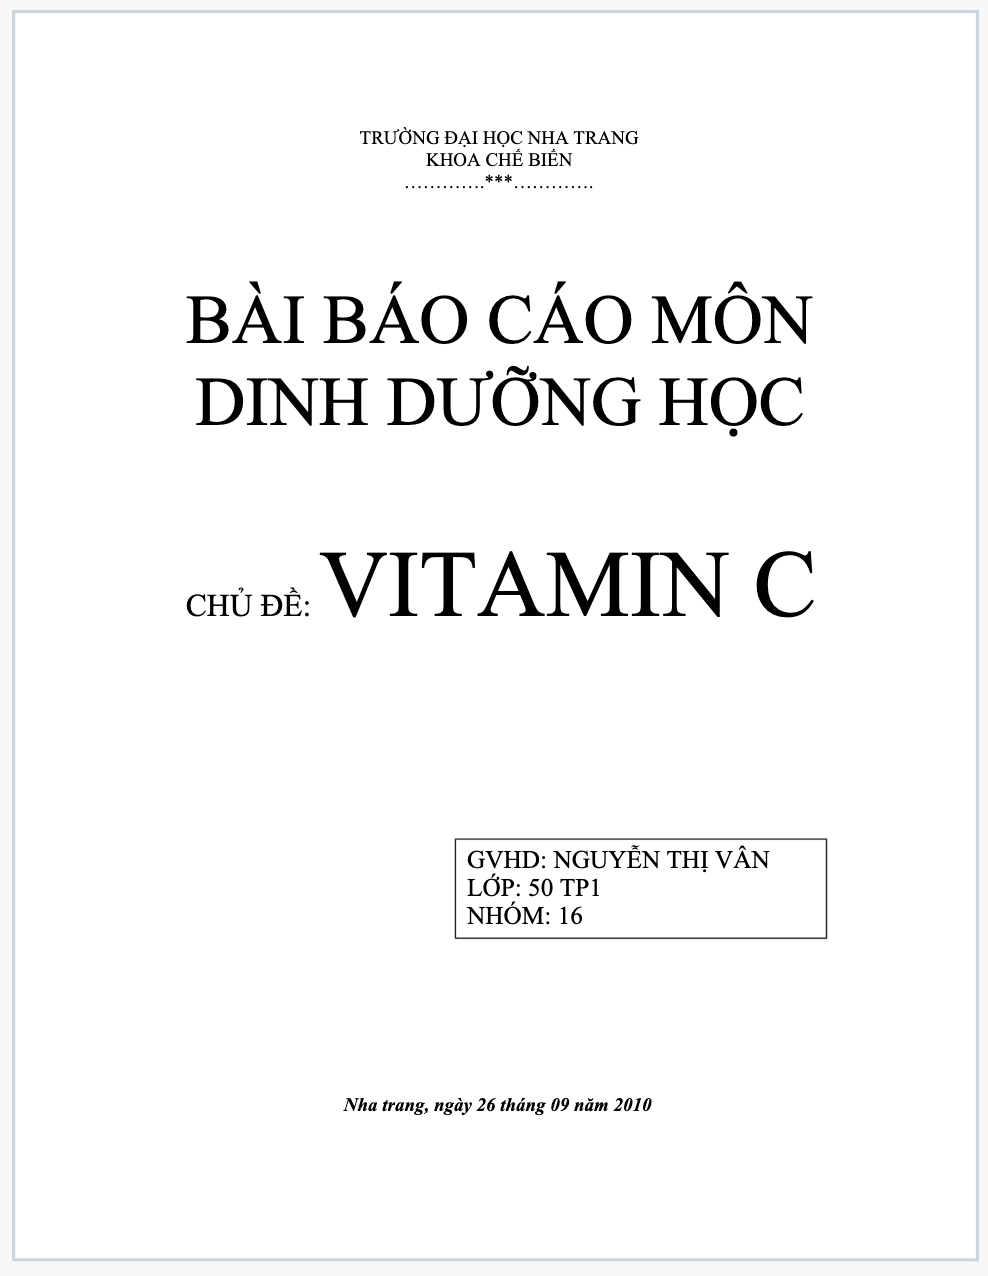 Báo cáo môn dinh dưỡng học theo chủ đề: vitamin C